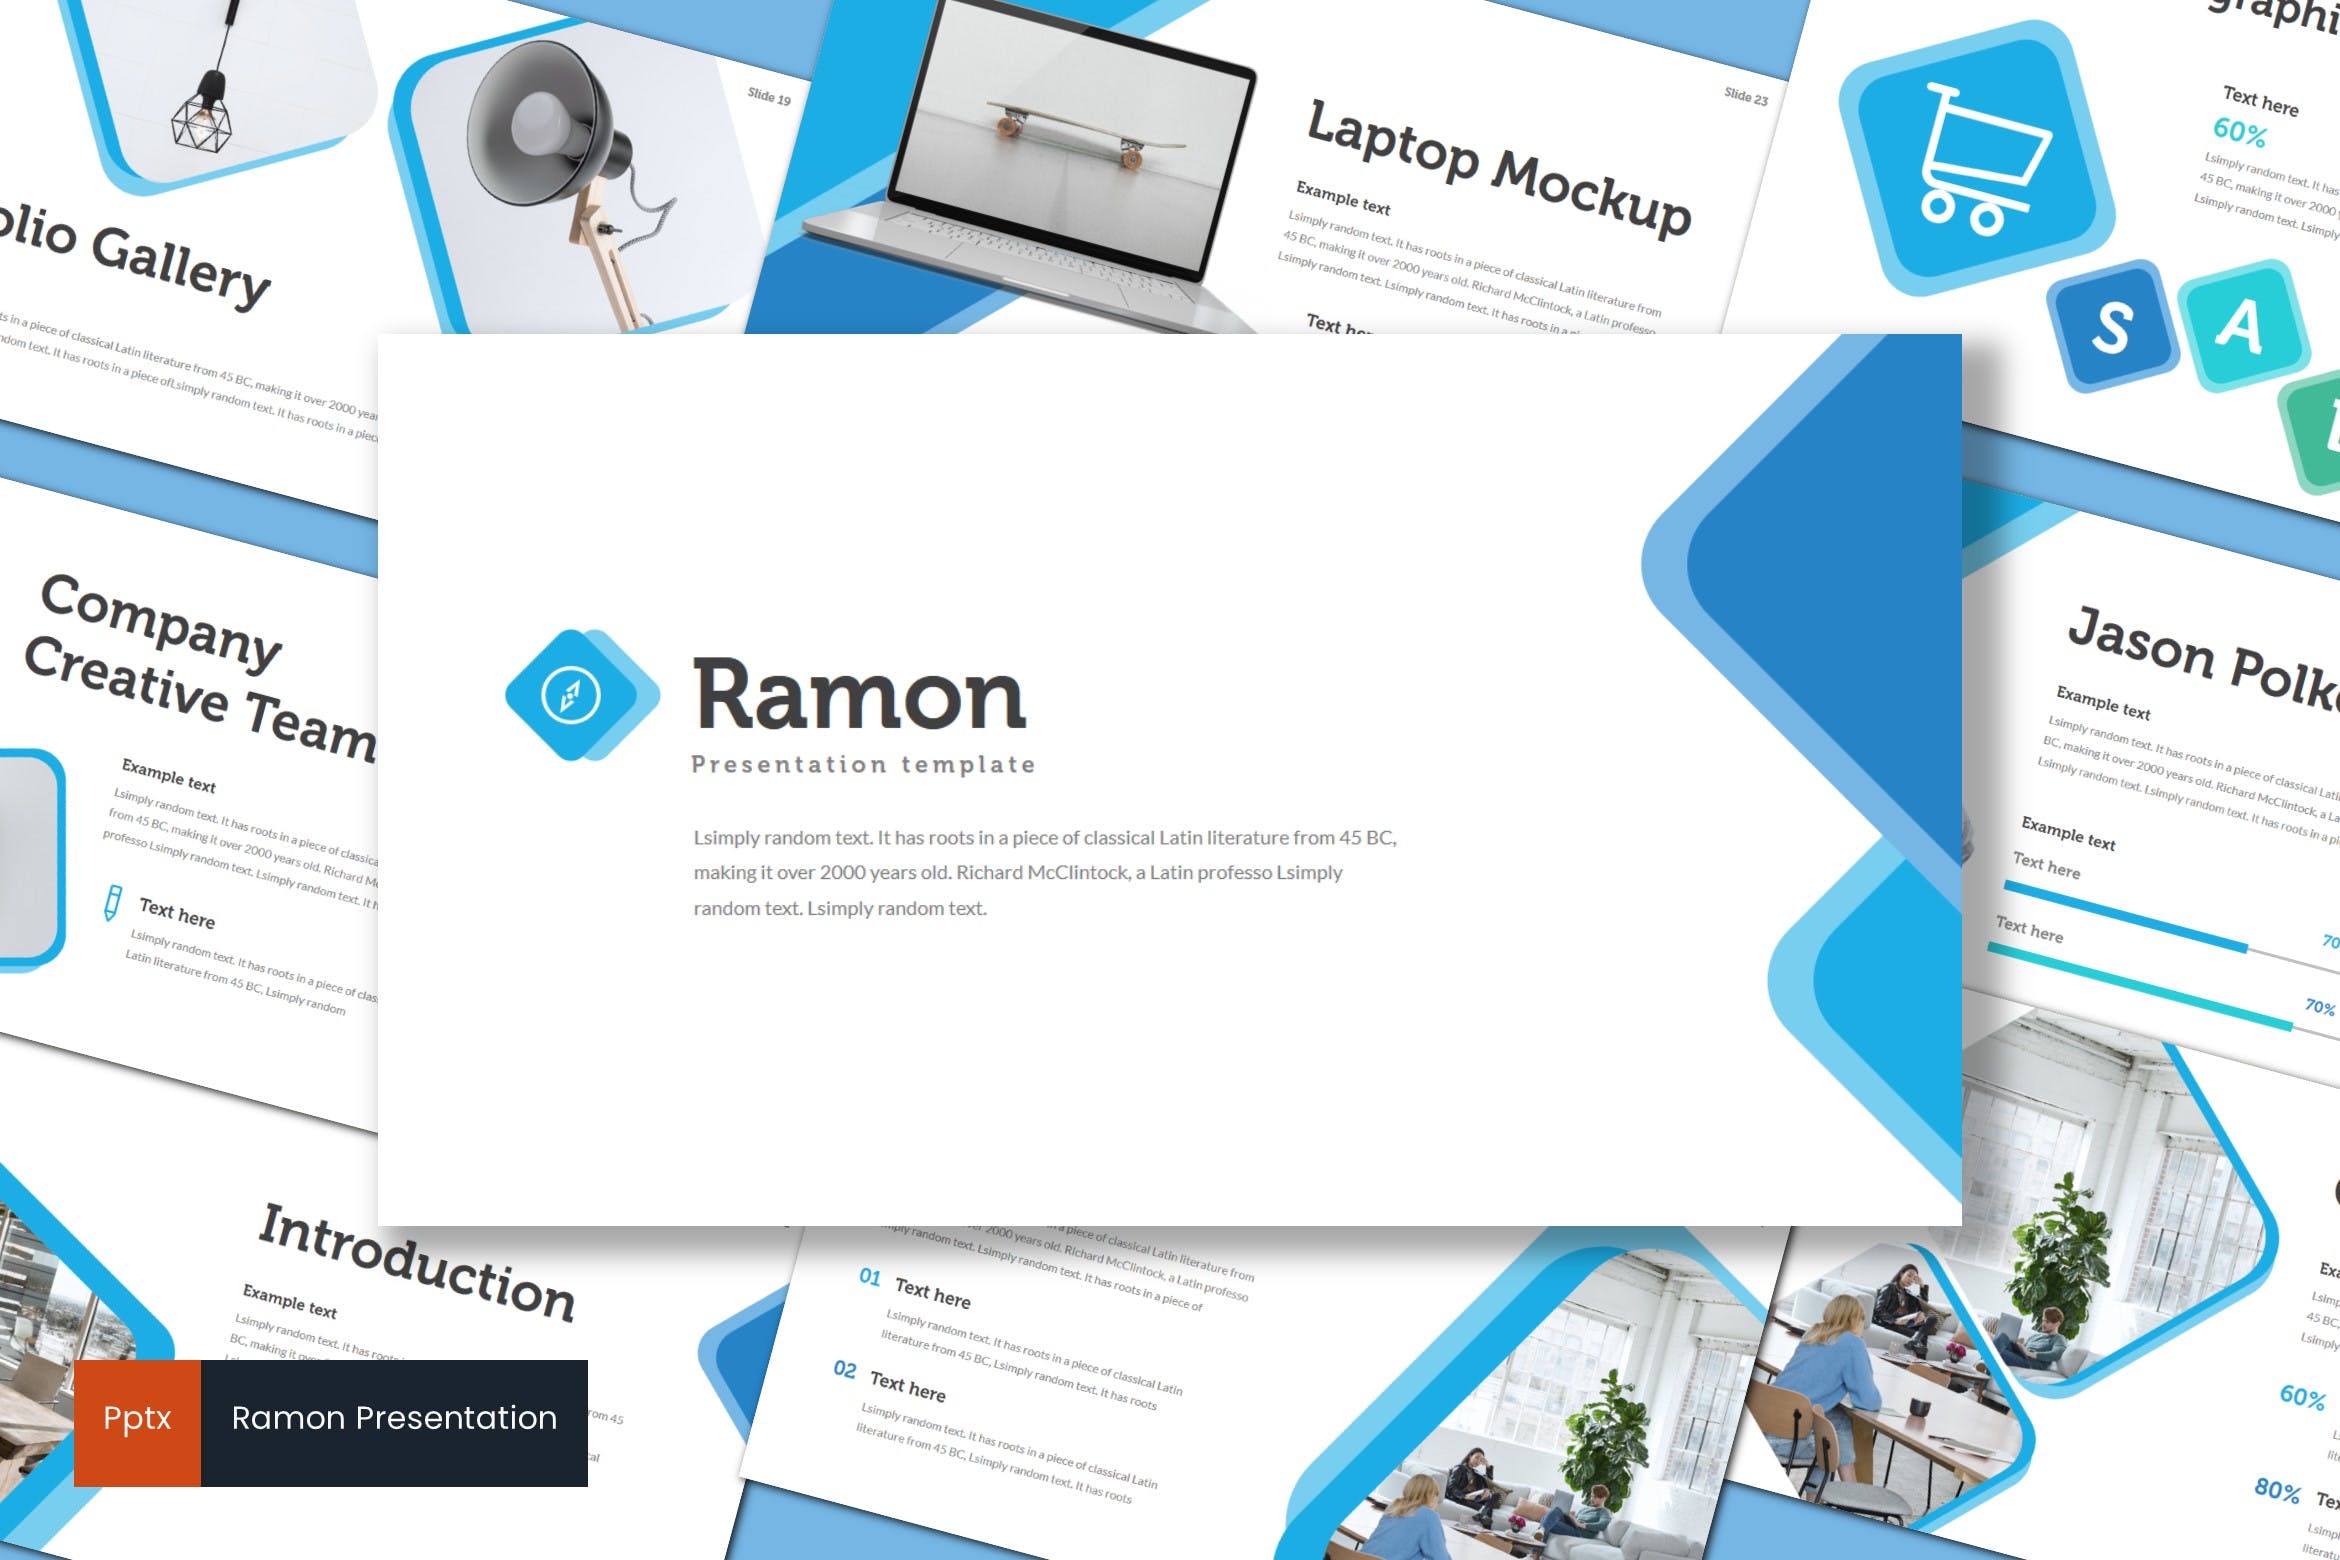 室内设计品牌宣传亿图网易图库精选PPT模板 Ramon – Powerpoint Template插图